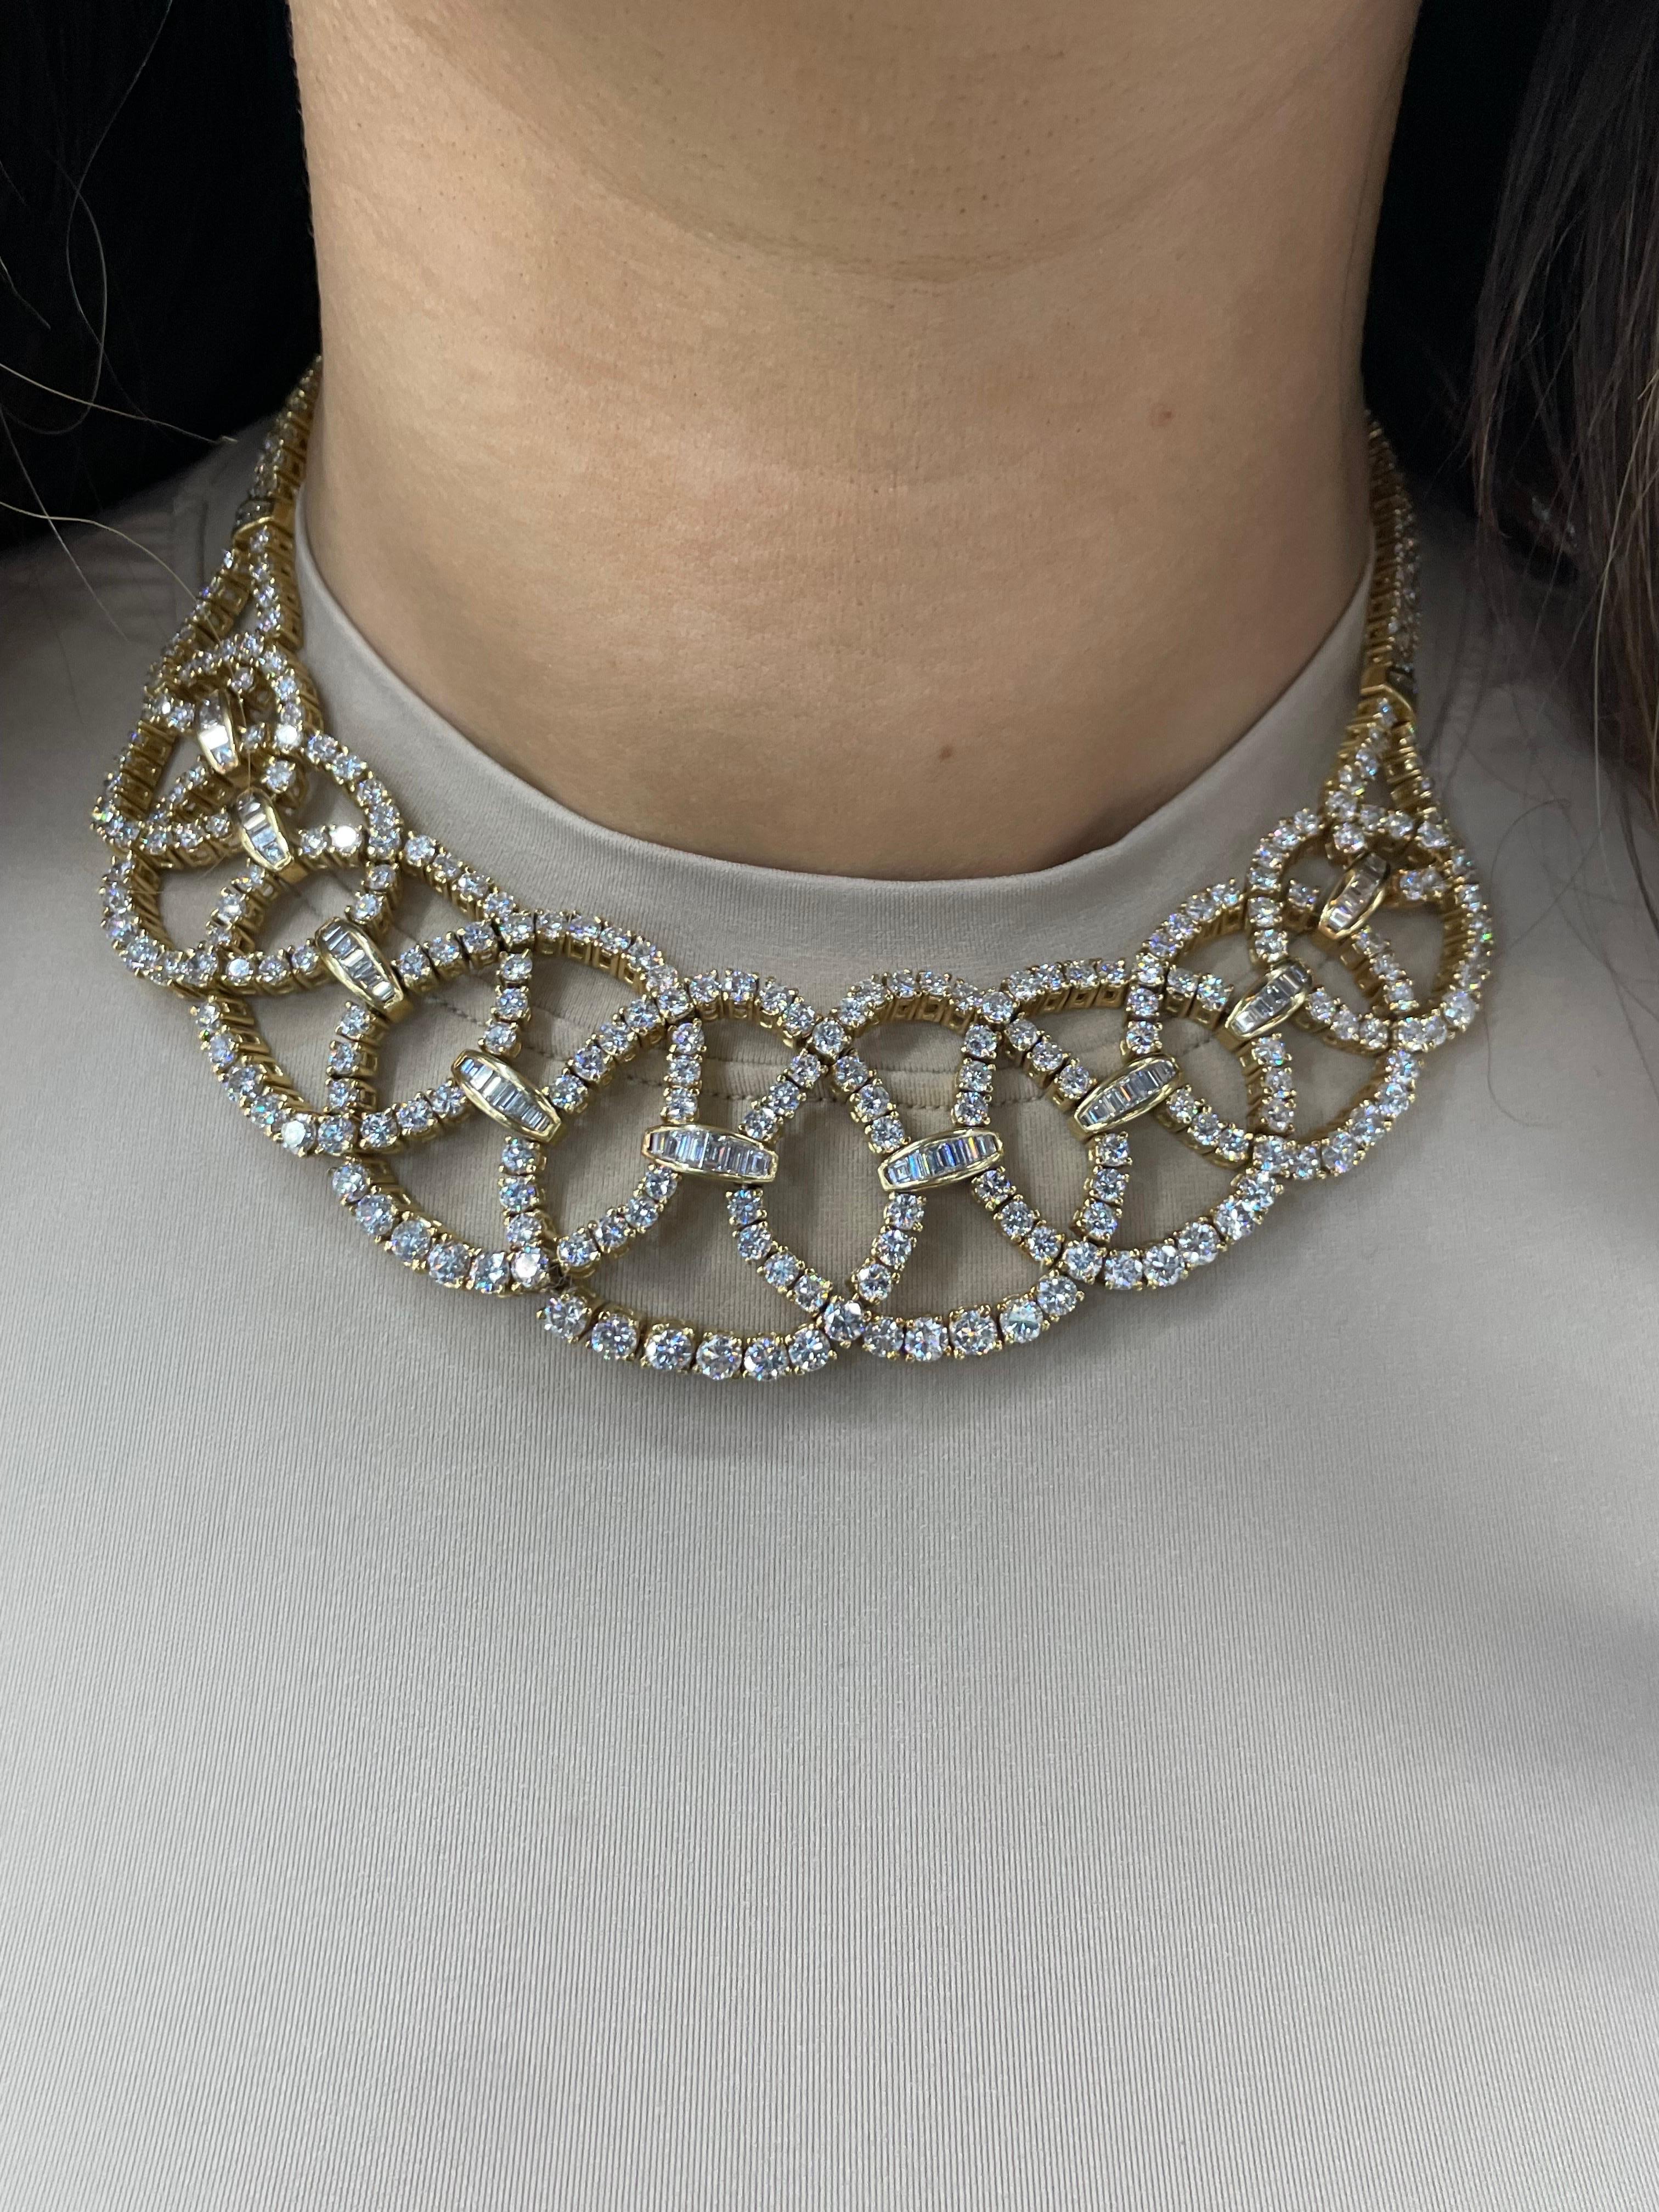 Circa 1950s Diamond Collar Necklace 45 Carats 18 Karat Yellow Gold For Sale 7